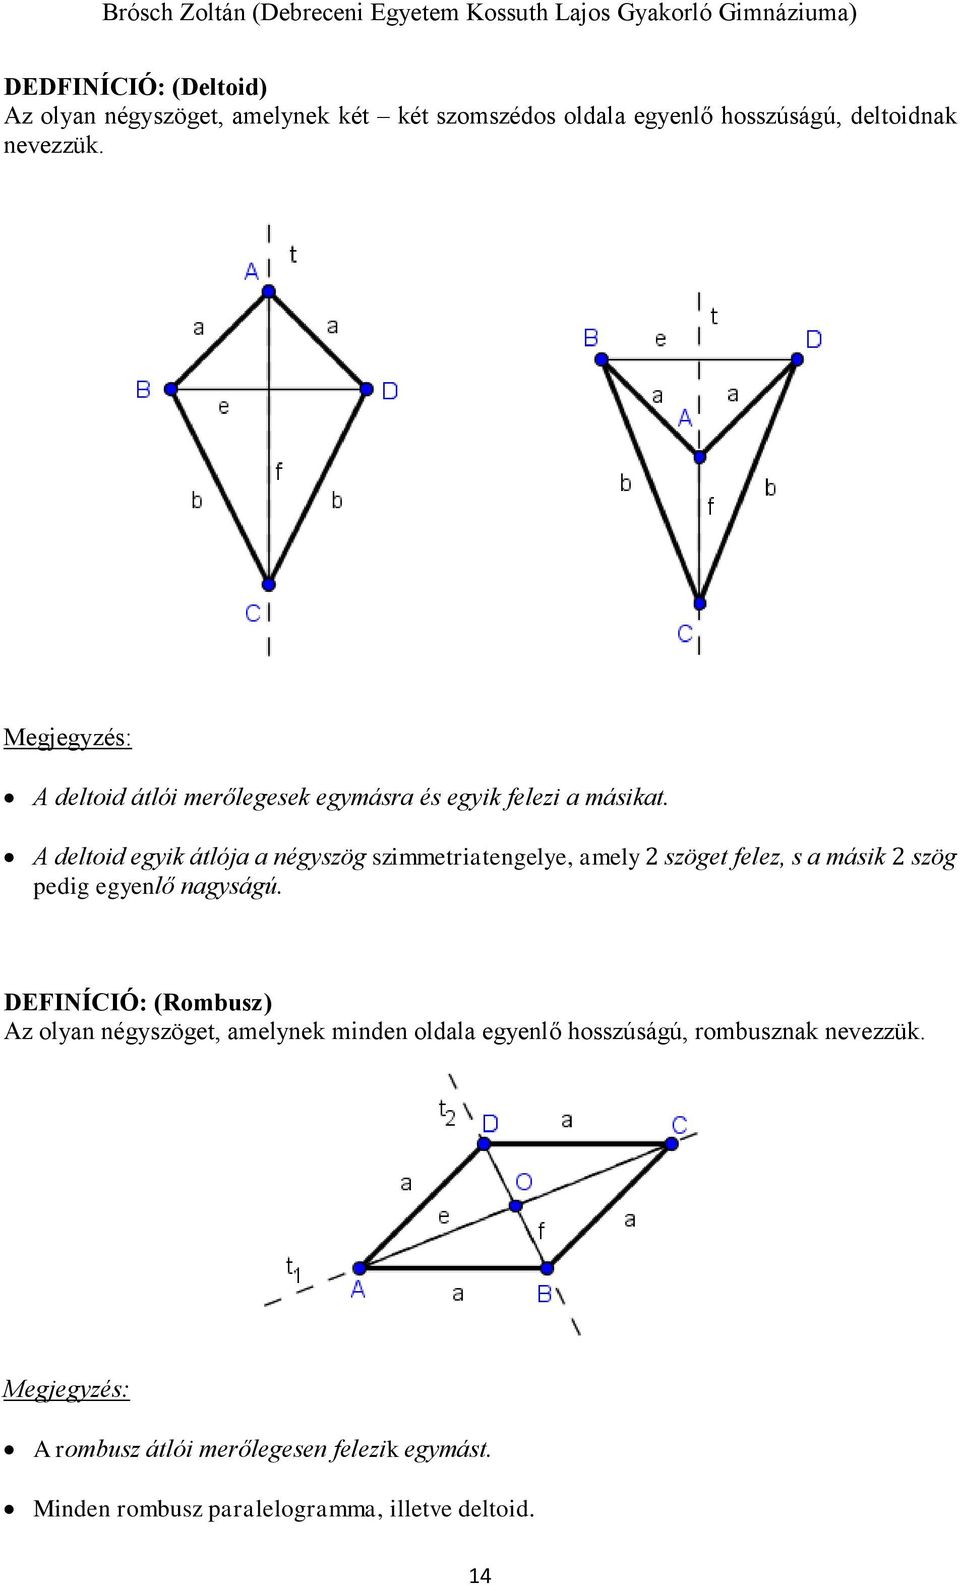 A deltoid egyik átlója a négyszög szimmetriatengelye, amely 2 szöget felez, s a másik 2 szög pedig egyenlő nagyságú.